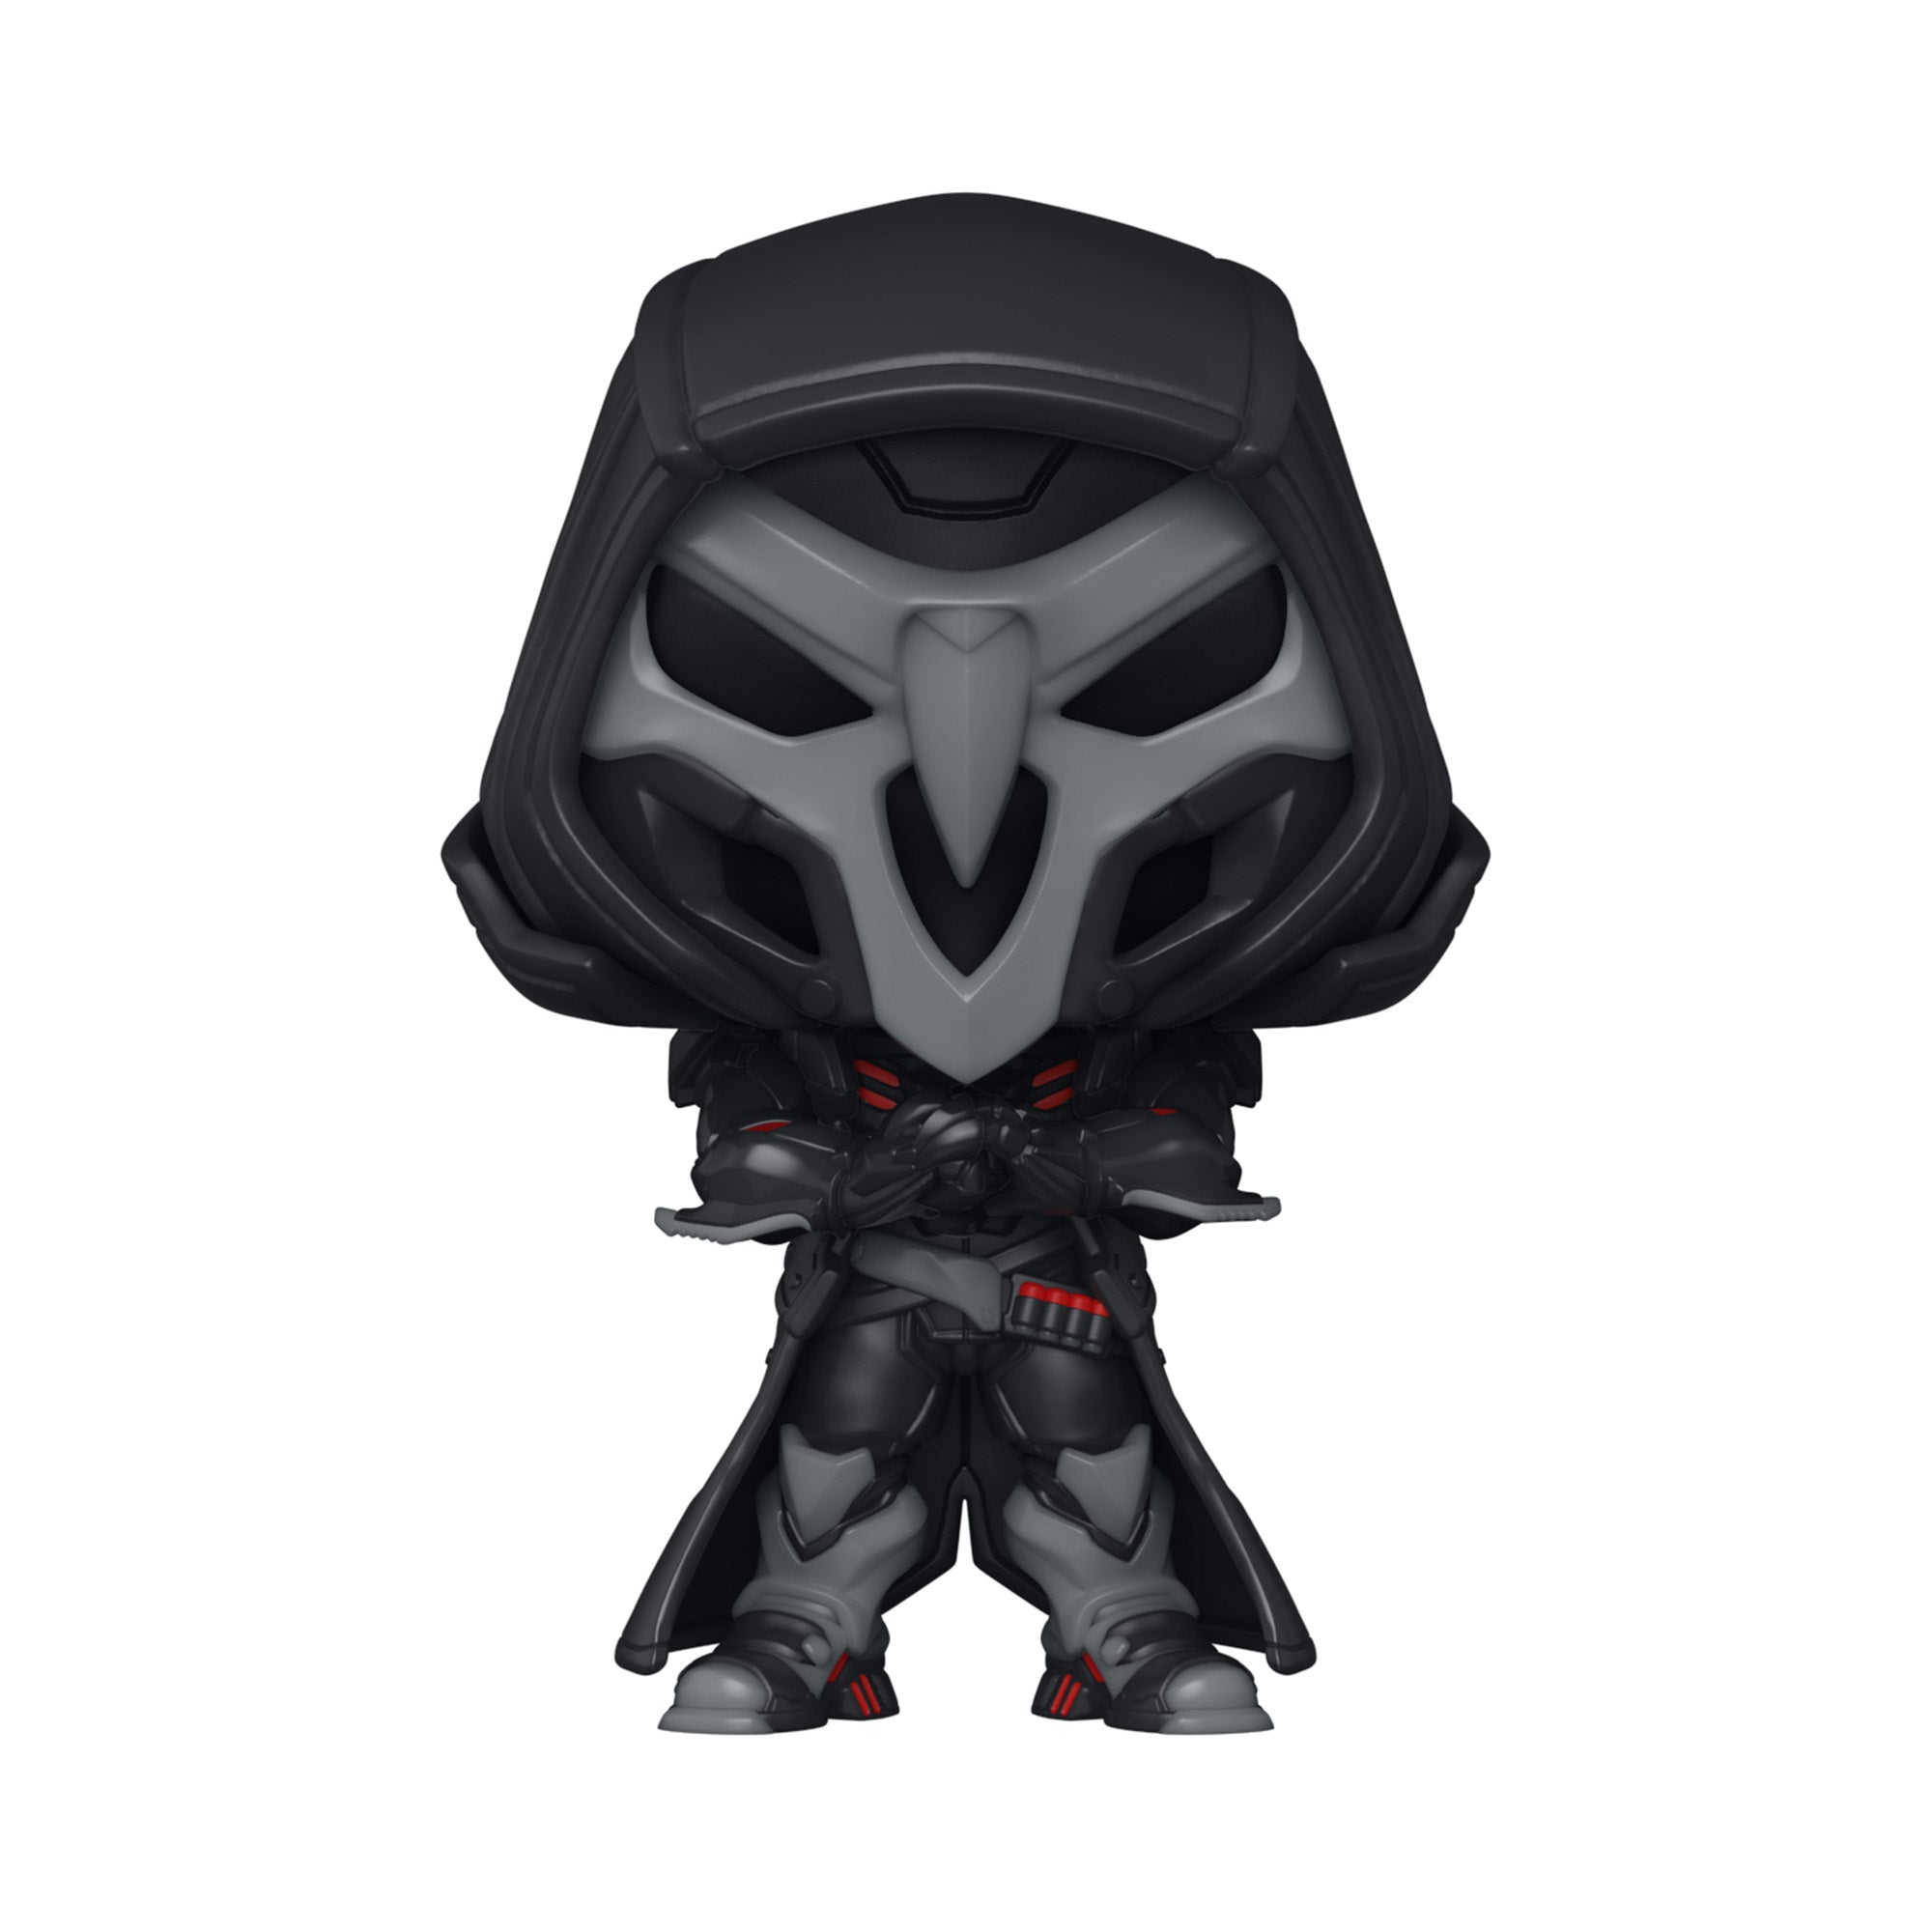 Overwatch 2 Reaper Funko POP! - Front View